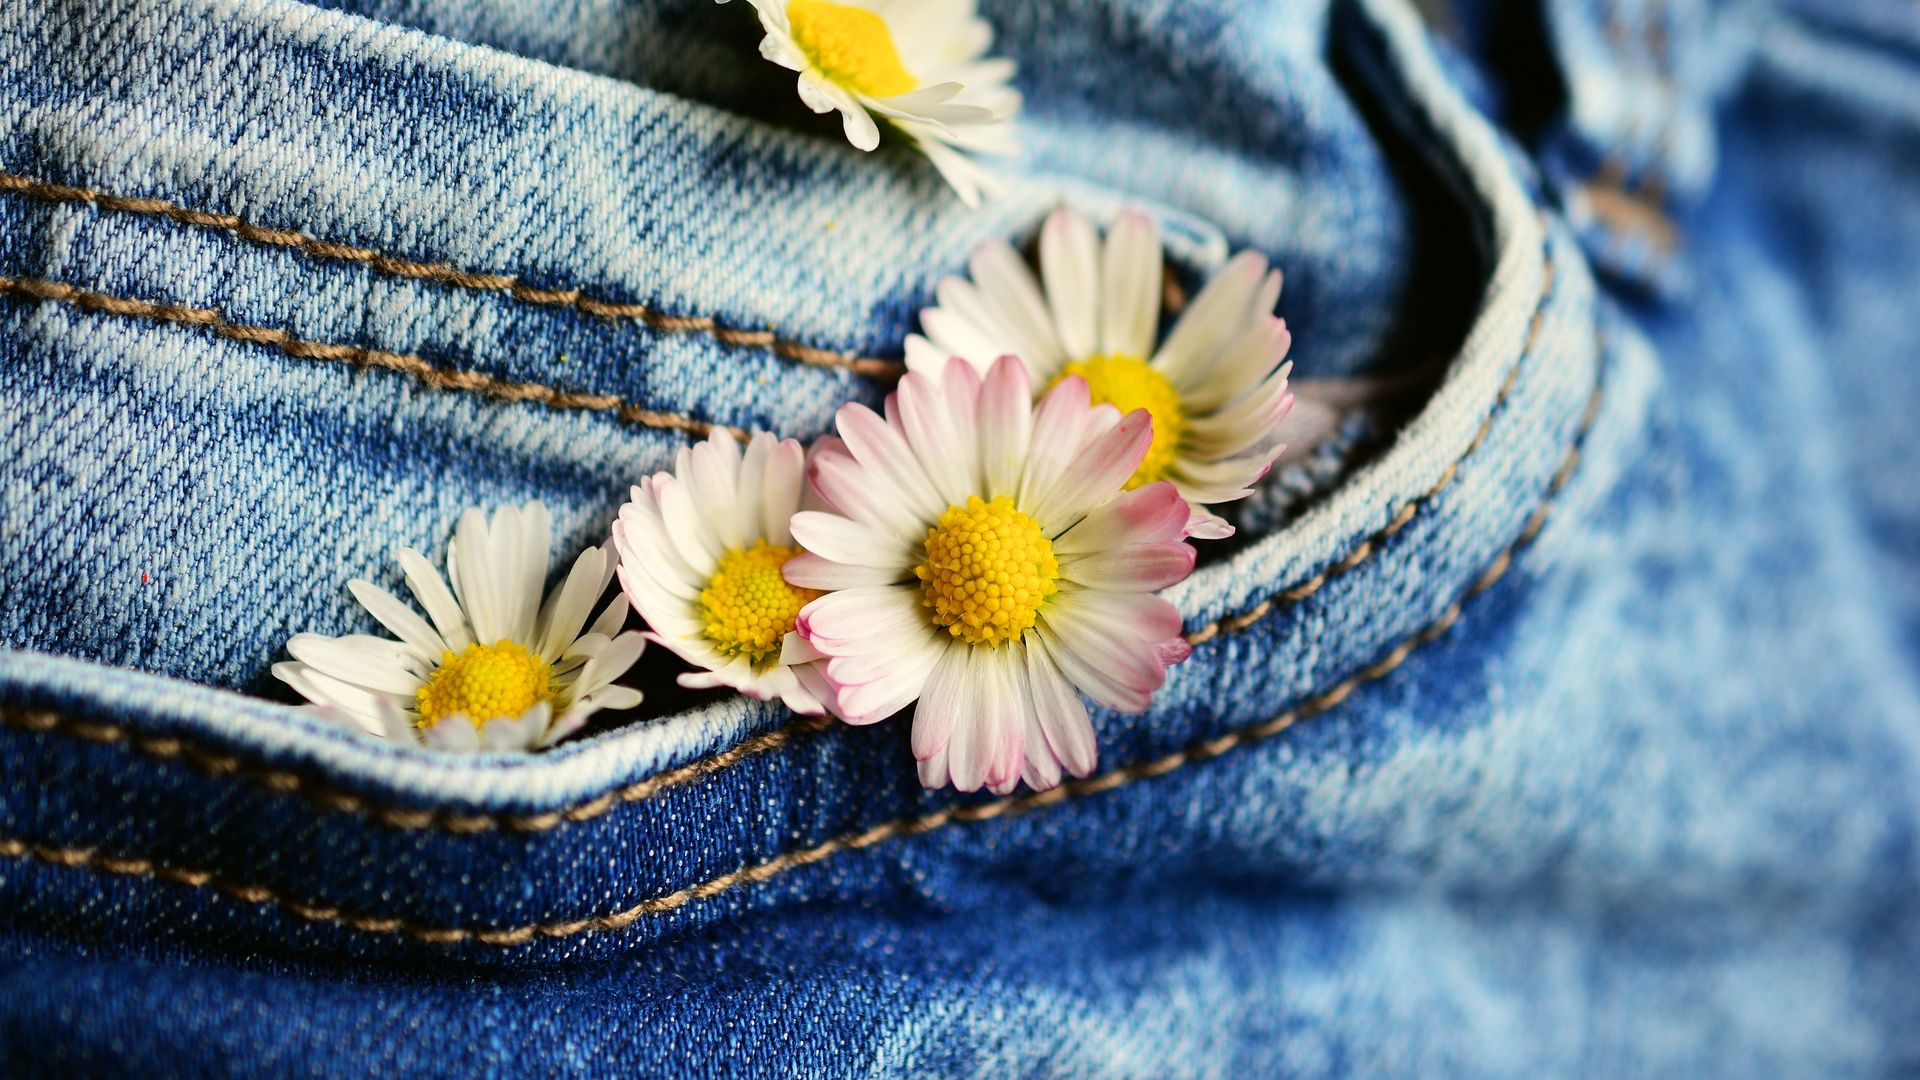 Wallpaper Pocket, daisy, jeans, flowers